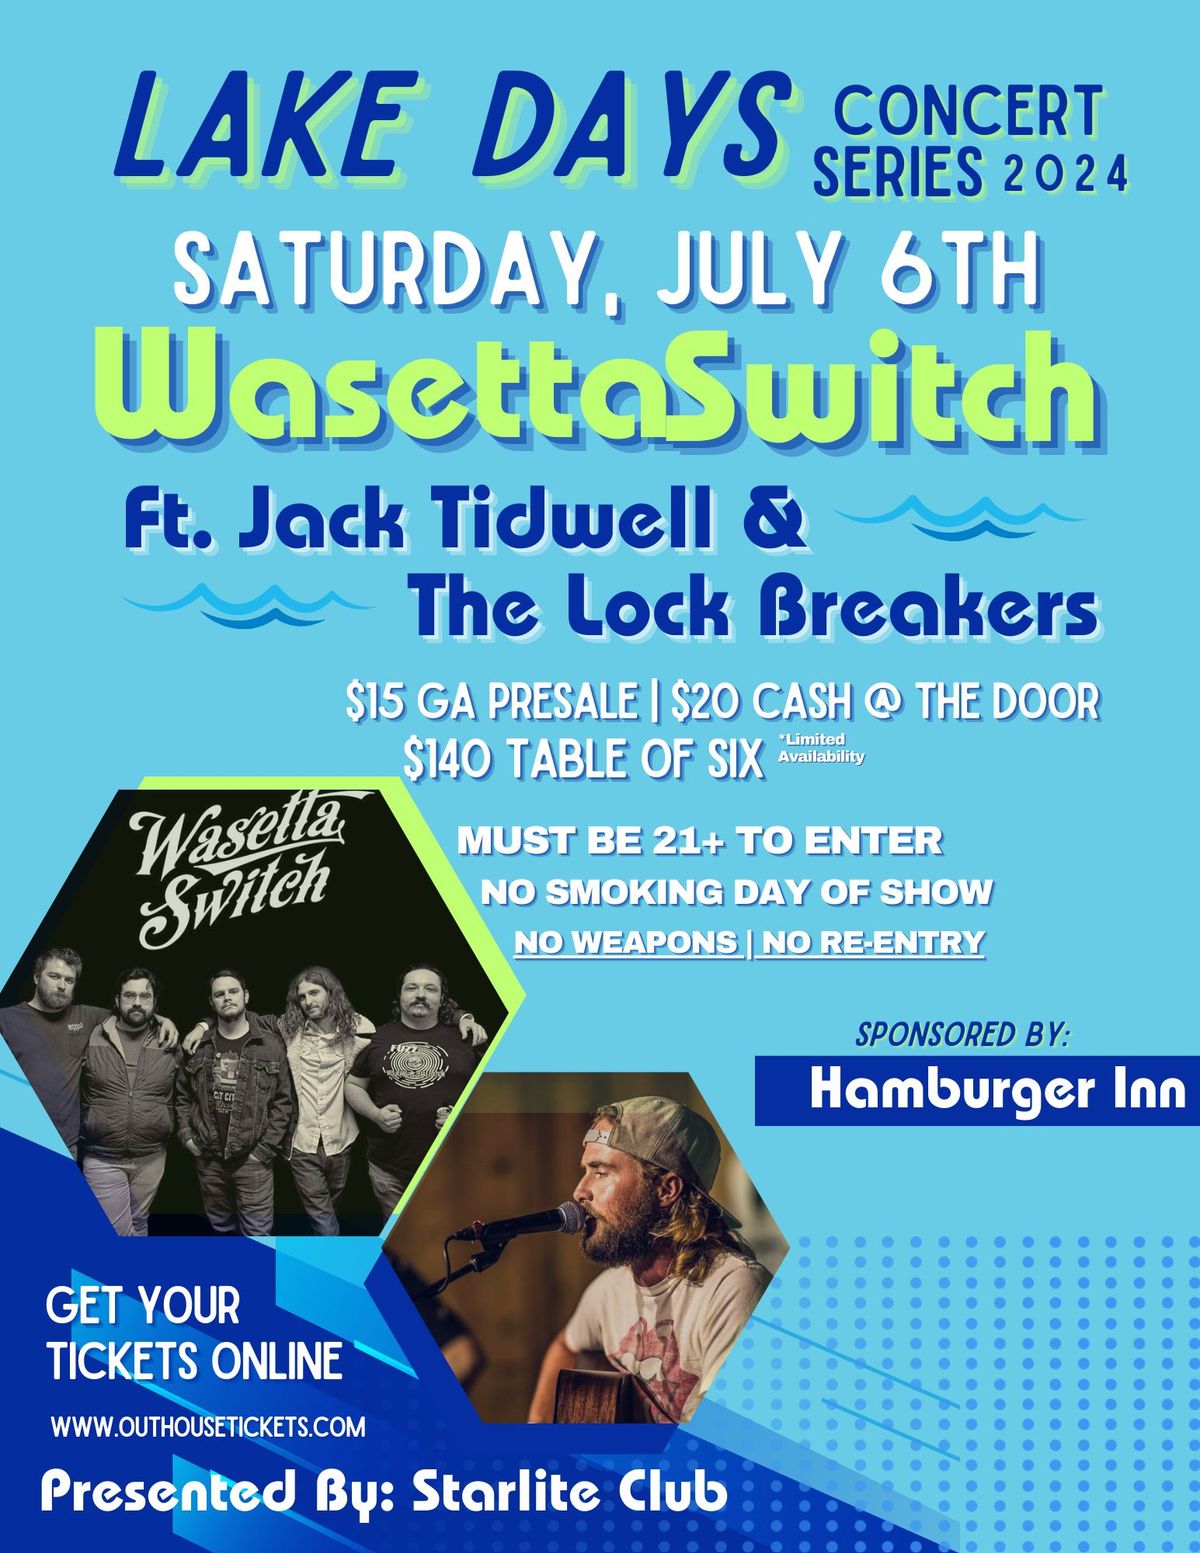 Wasetta Switch Ft. Jack Tidwell & The Lock Breakers